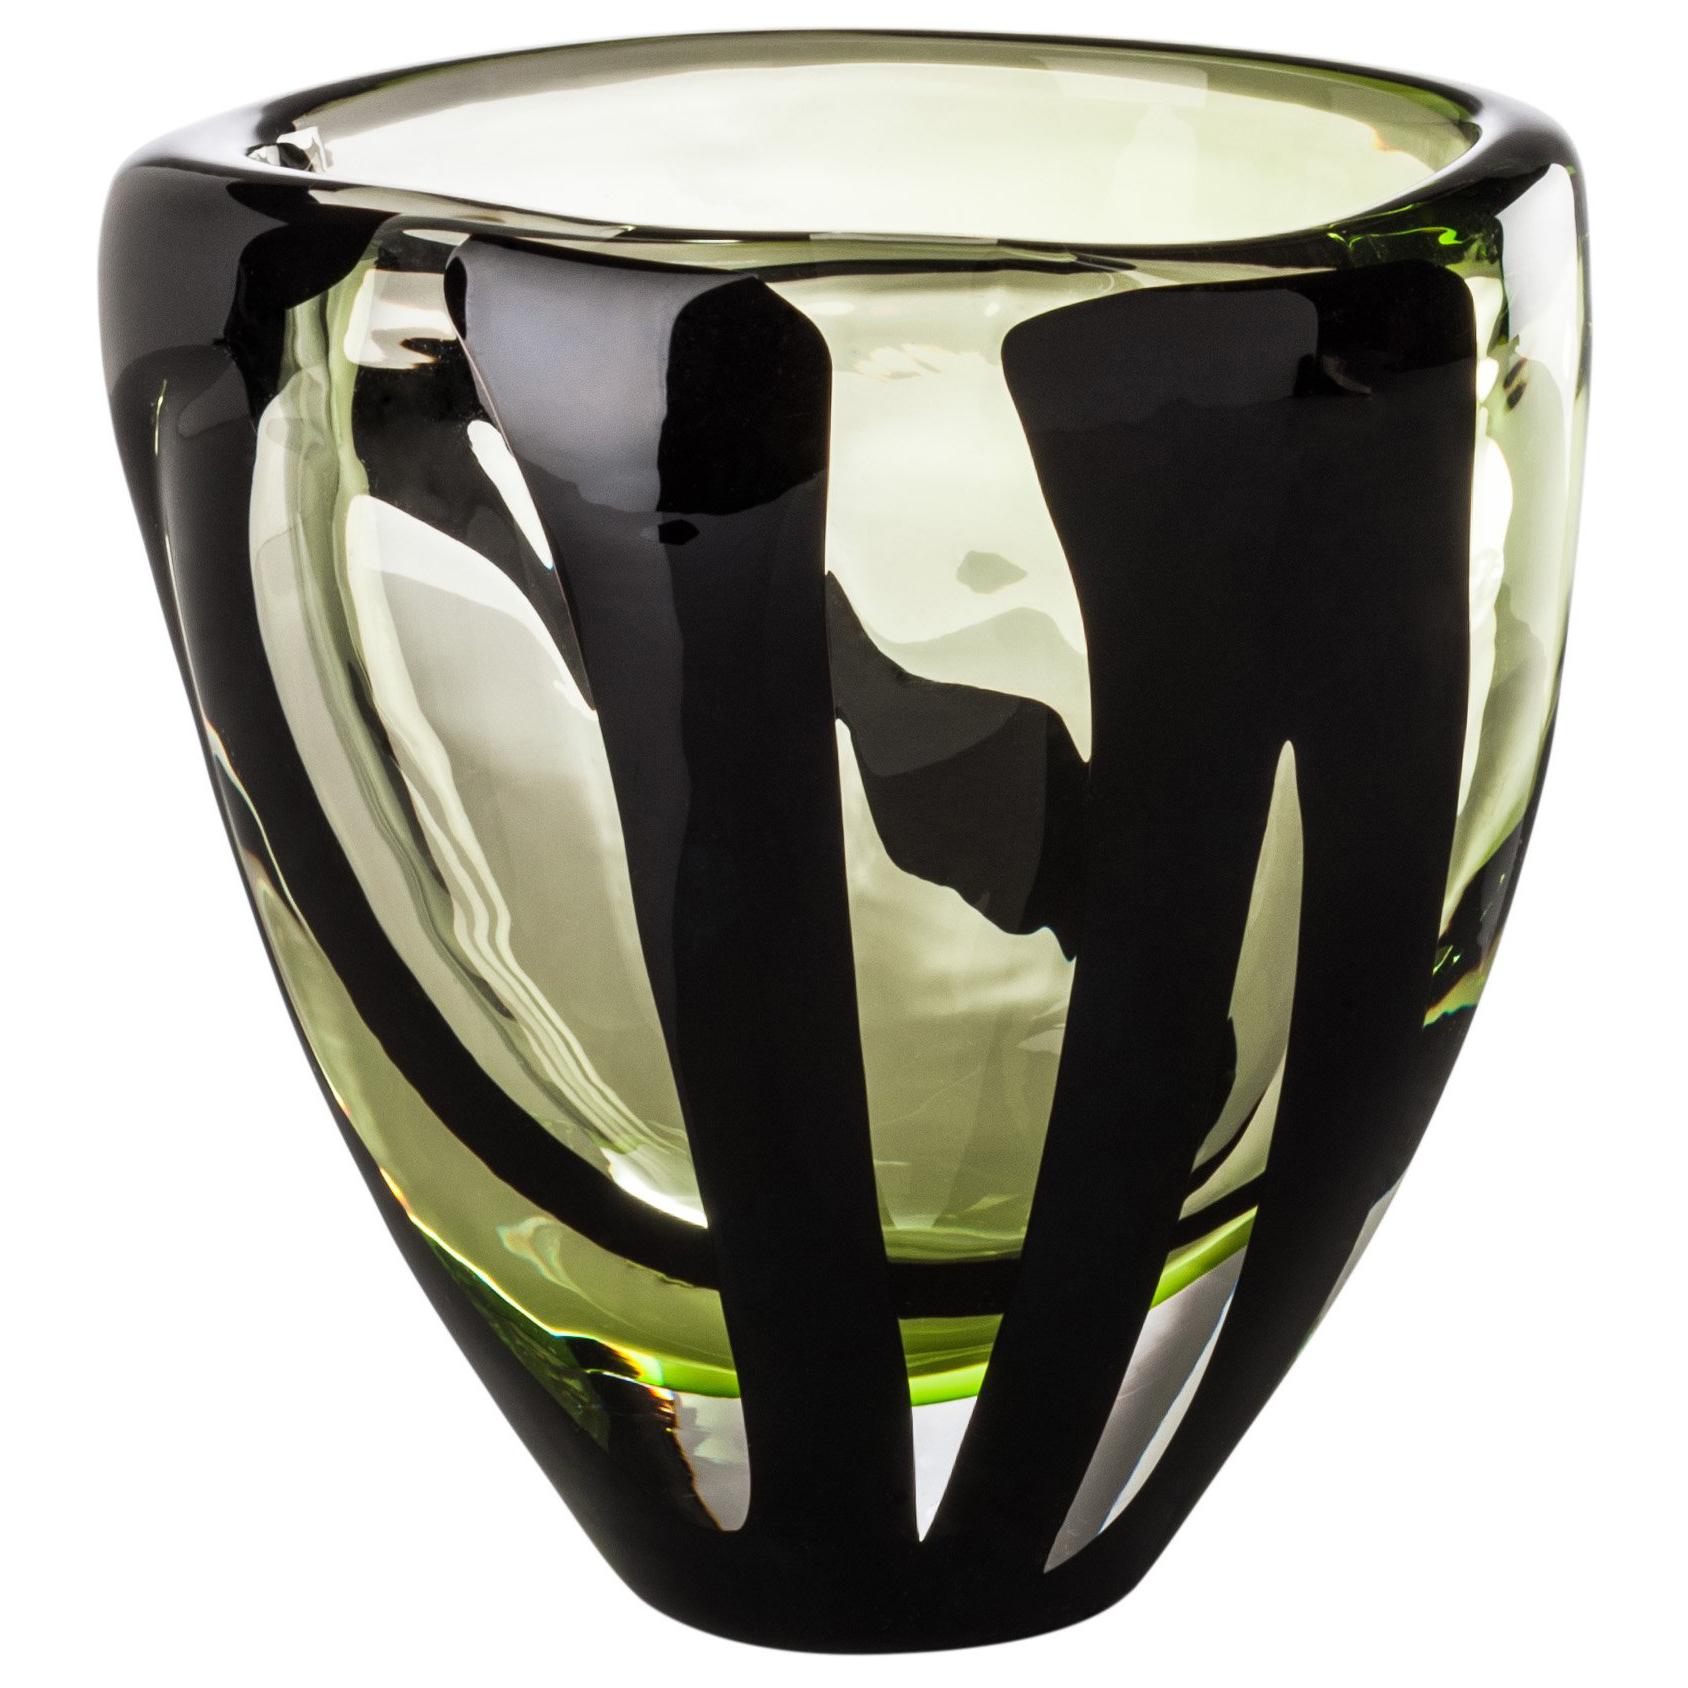 Venini: ovale Glasvase mit schwarzem Gürtel in Kristall und Grün von Peter Marino